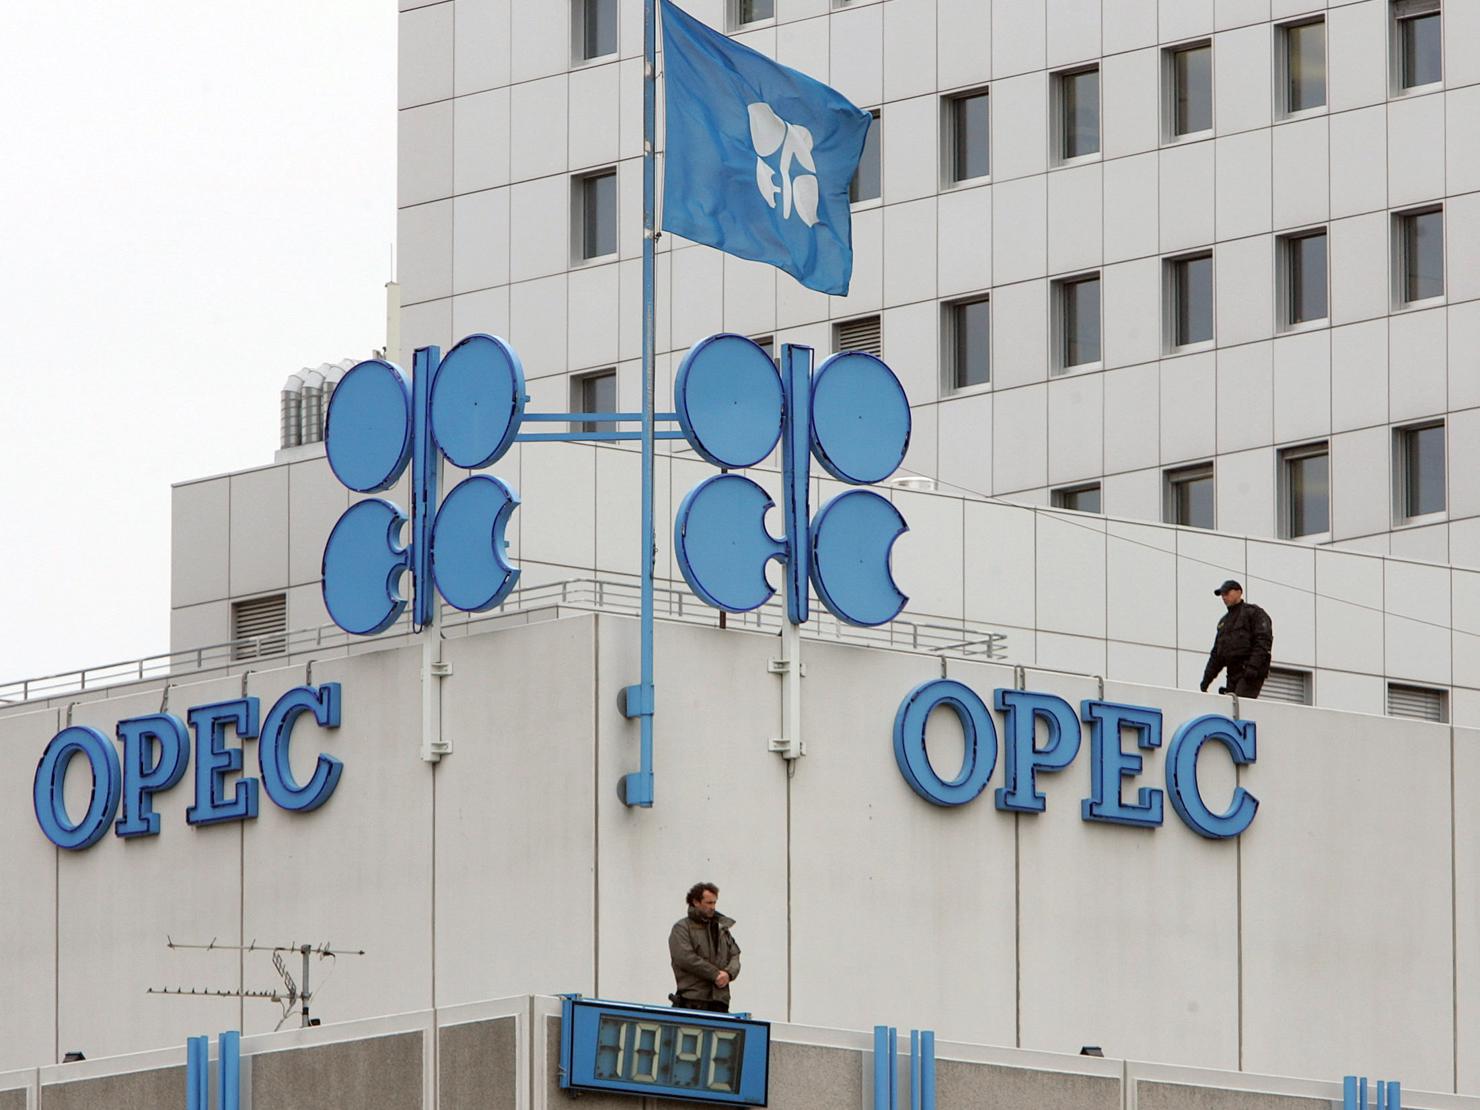 Nhằm ổn định giá dầu, các nước OPEC đã đạt được thỏa thuận cắt giảm 1,8 triệu thùng mỗi ngày trong tổng sản lượng khai thác dầu mỏ từ 11 quốc gia trên thế giới. Nguồn: internet.